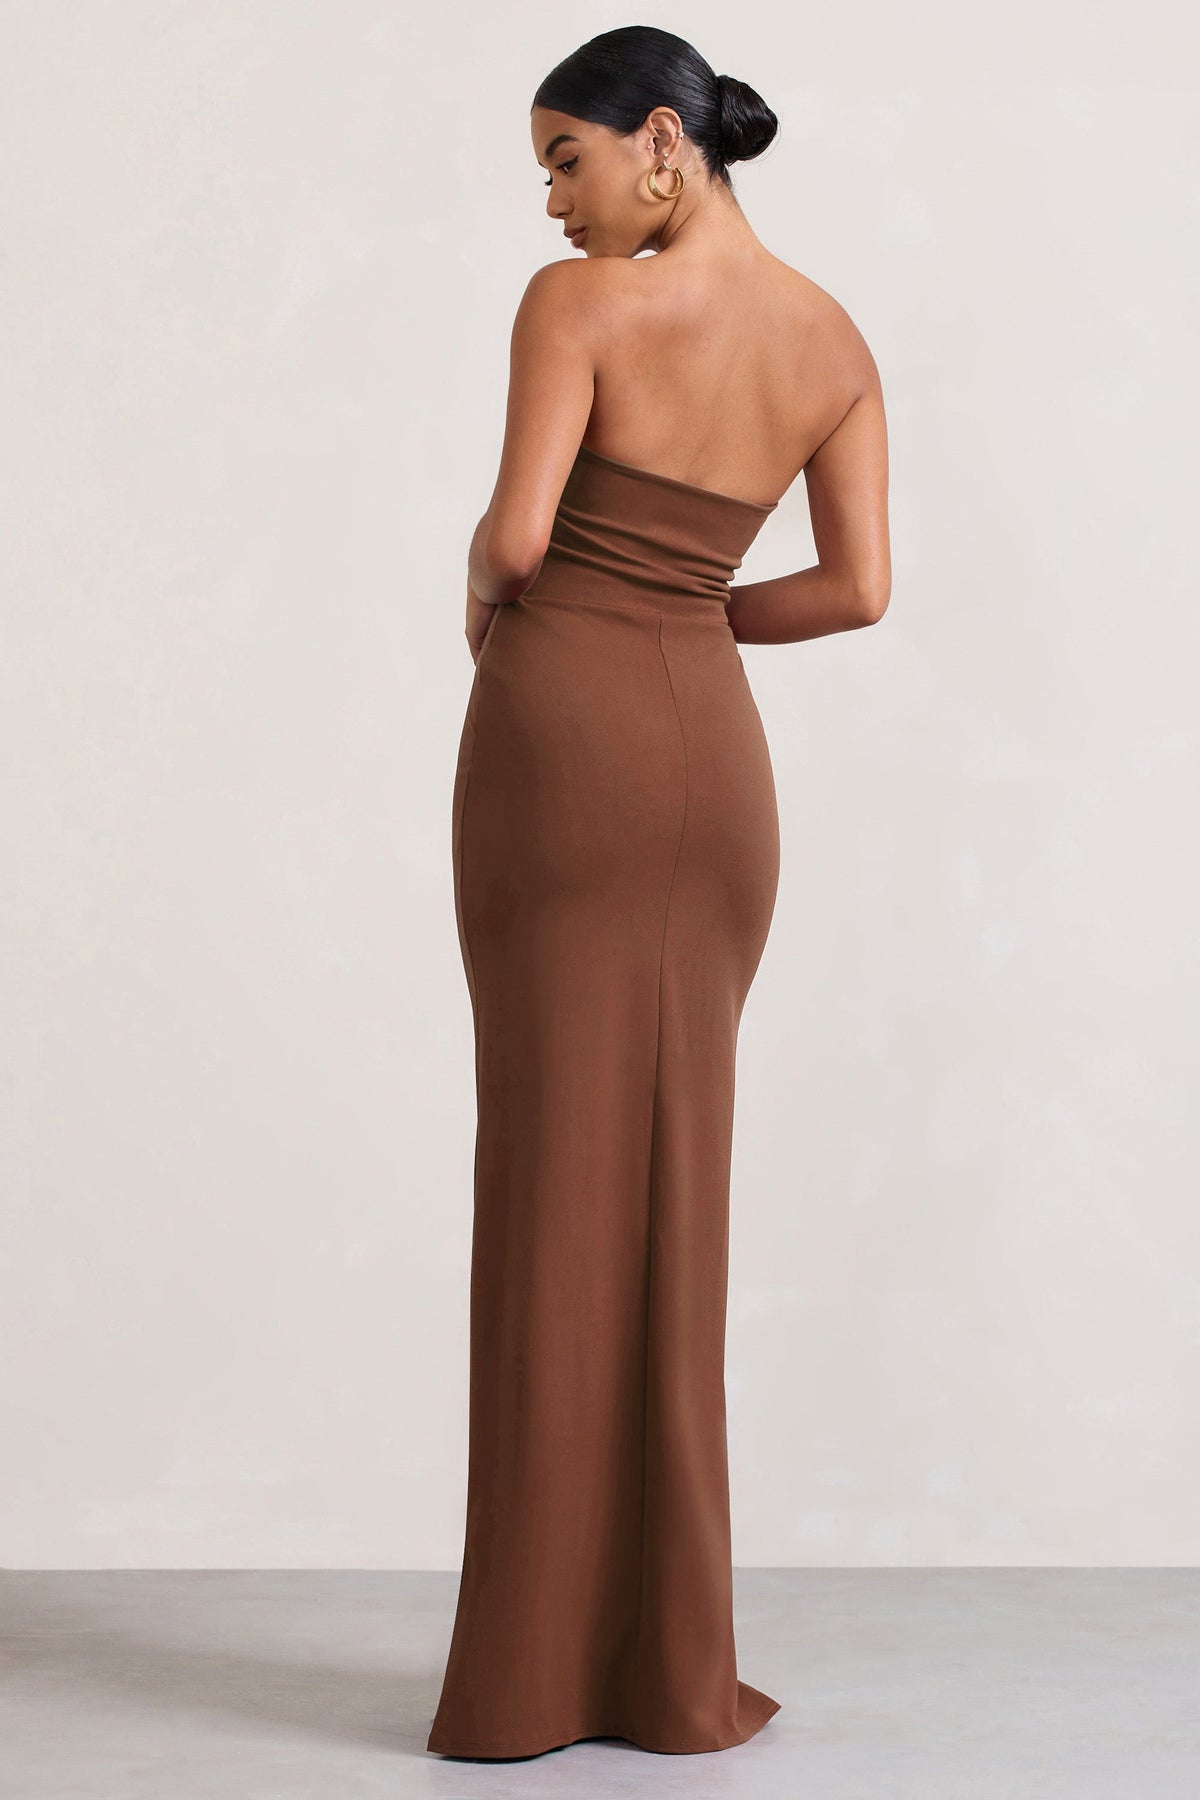 Brown & Apricot Bandeau Maxi Dress X30011, LASCANA